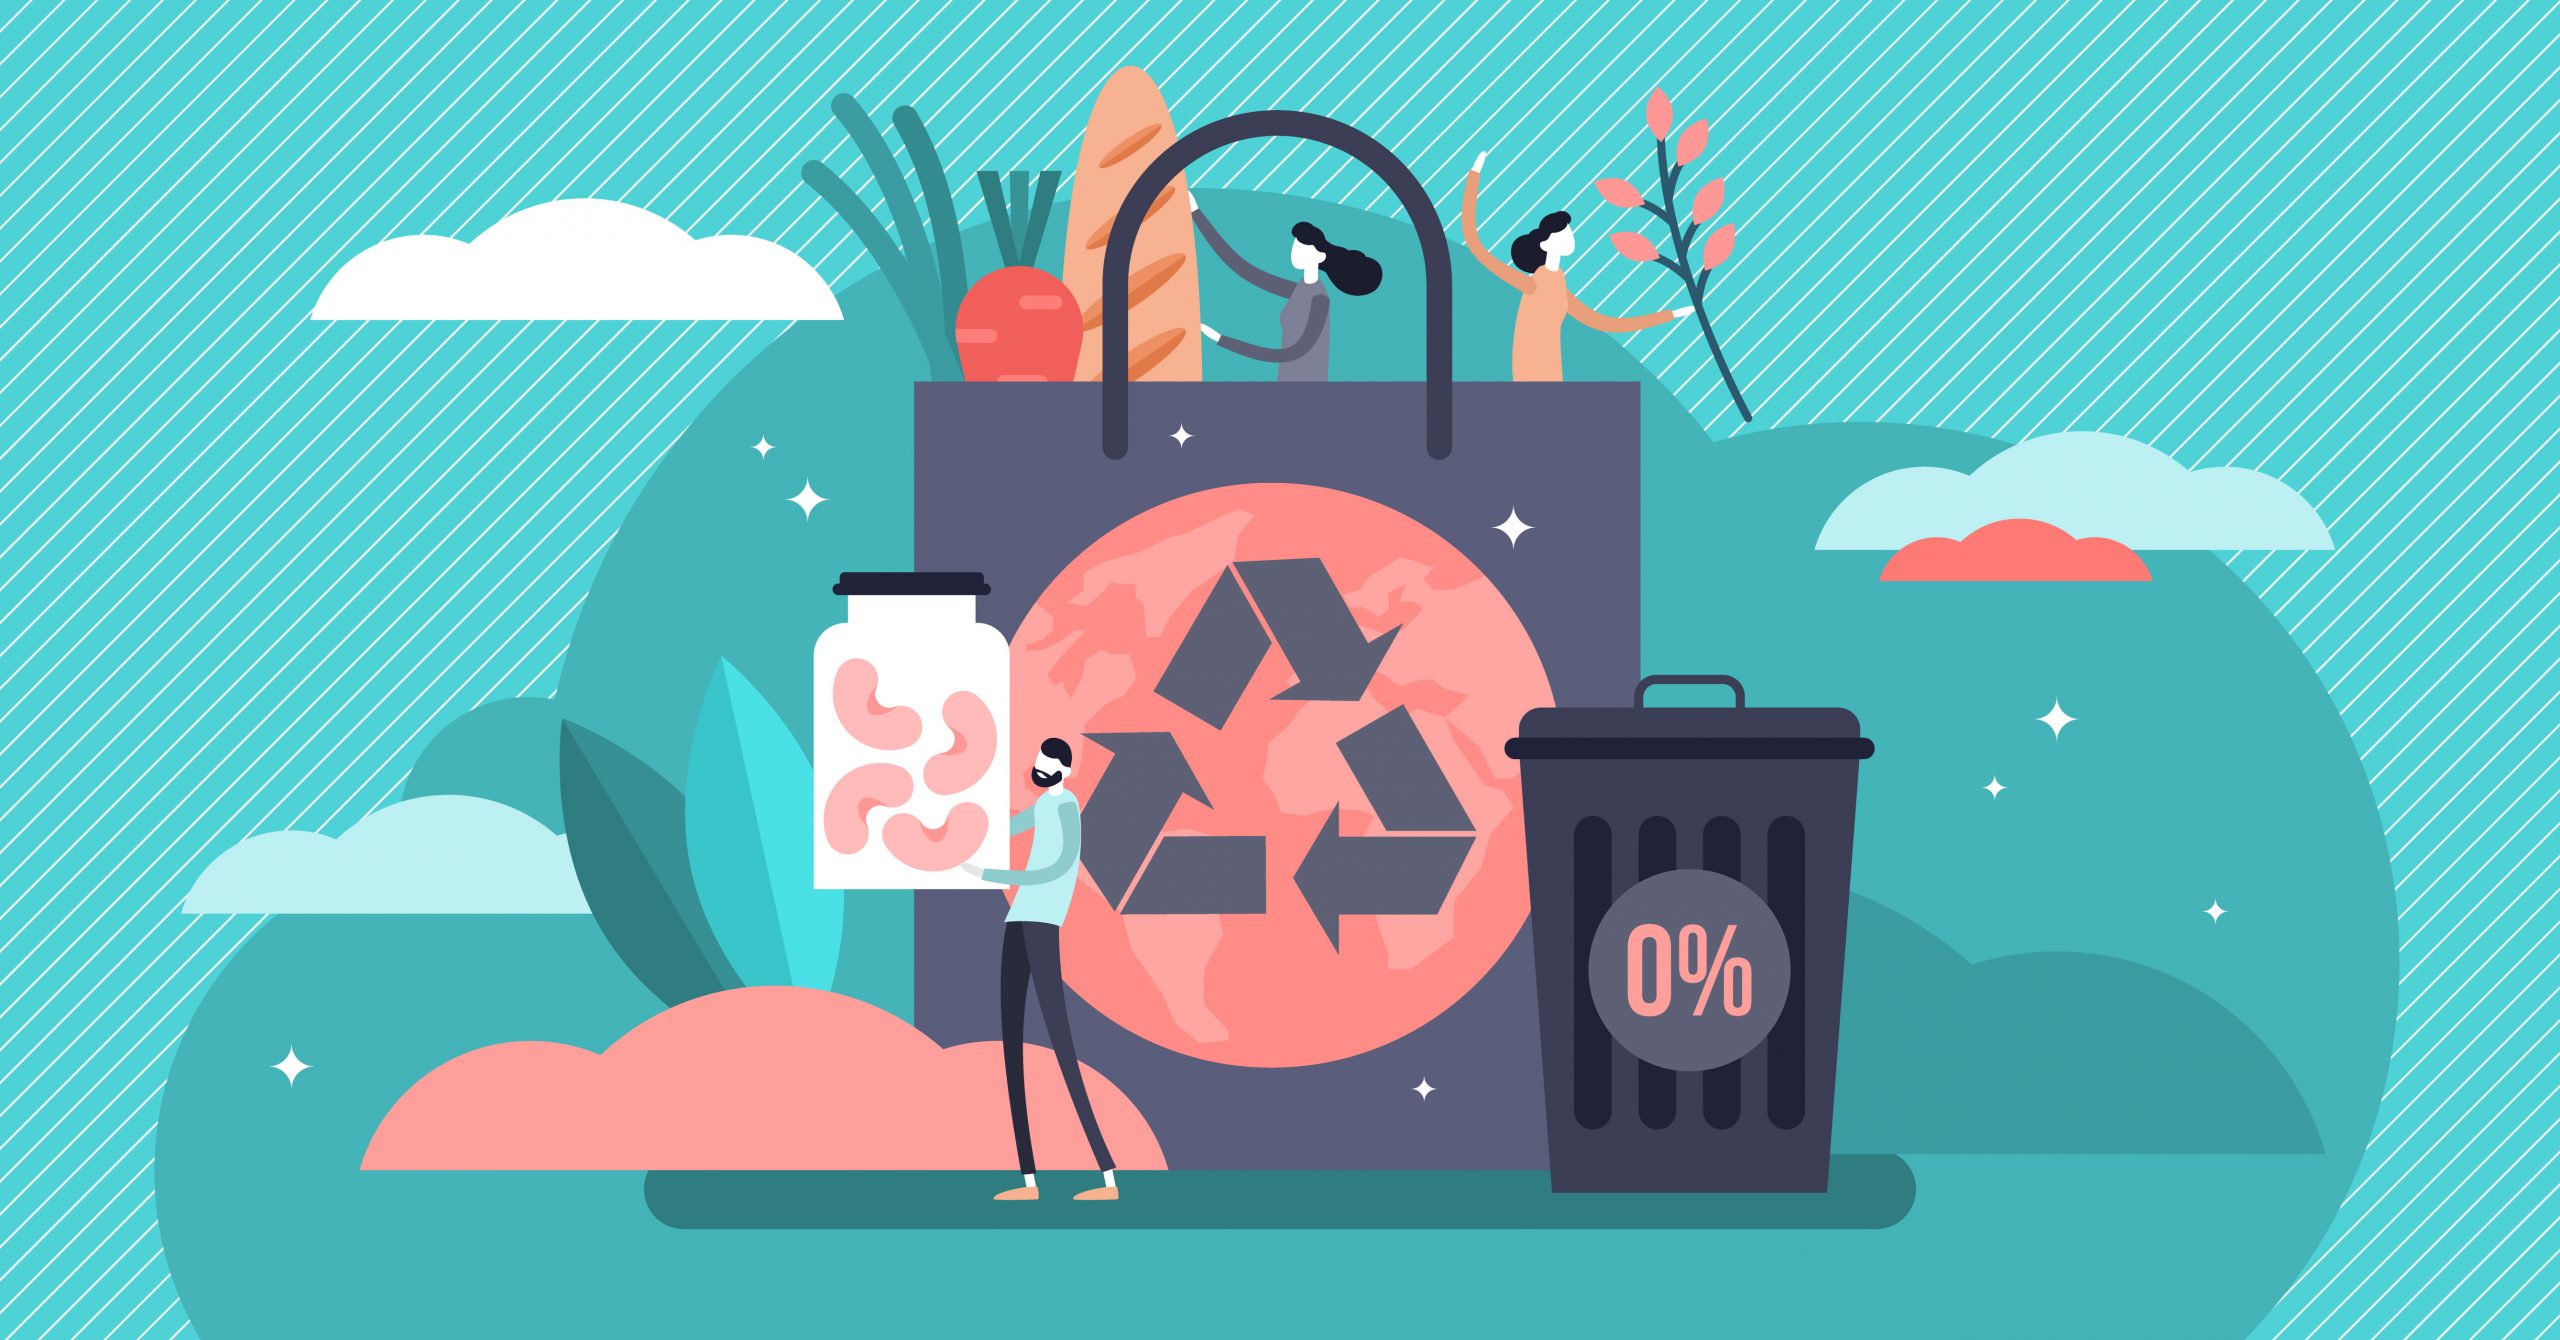 RAPPEL – Participez à cette conférence sur la réduction de nos déchets